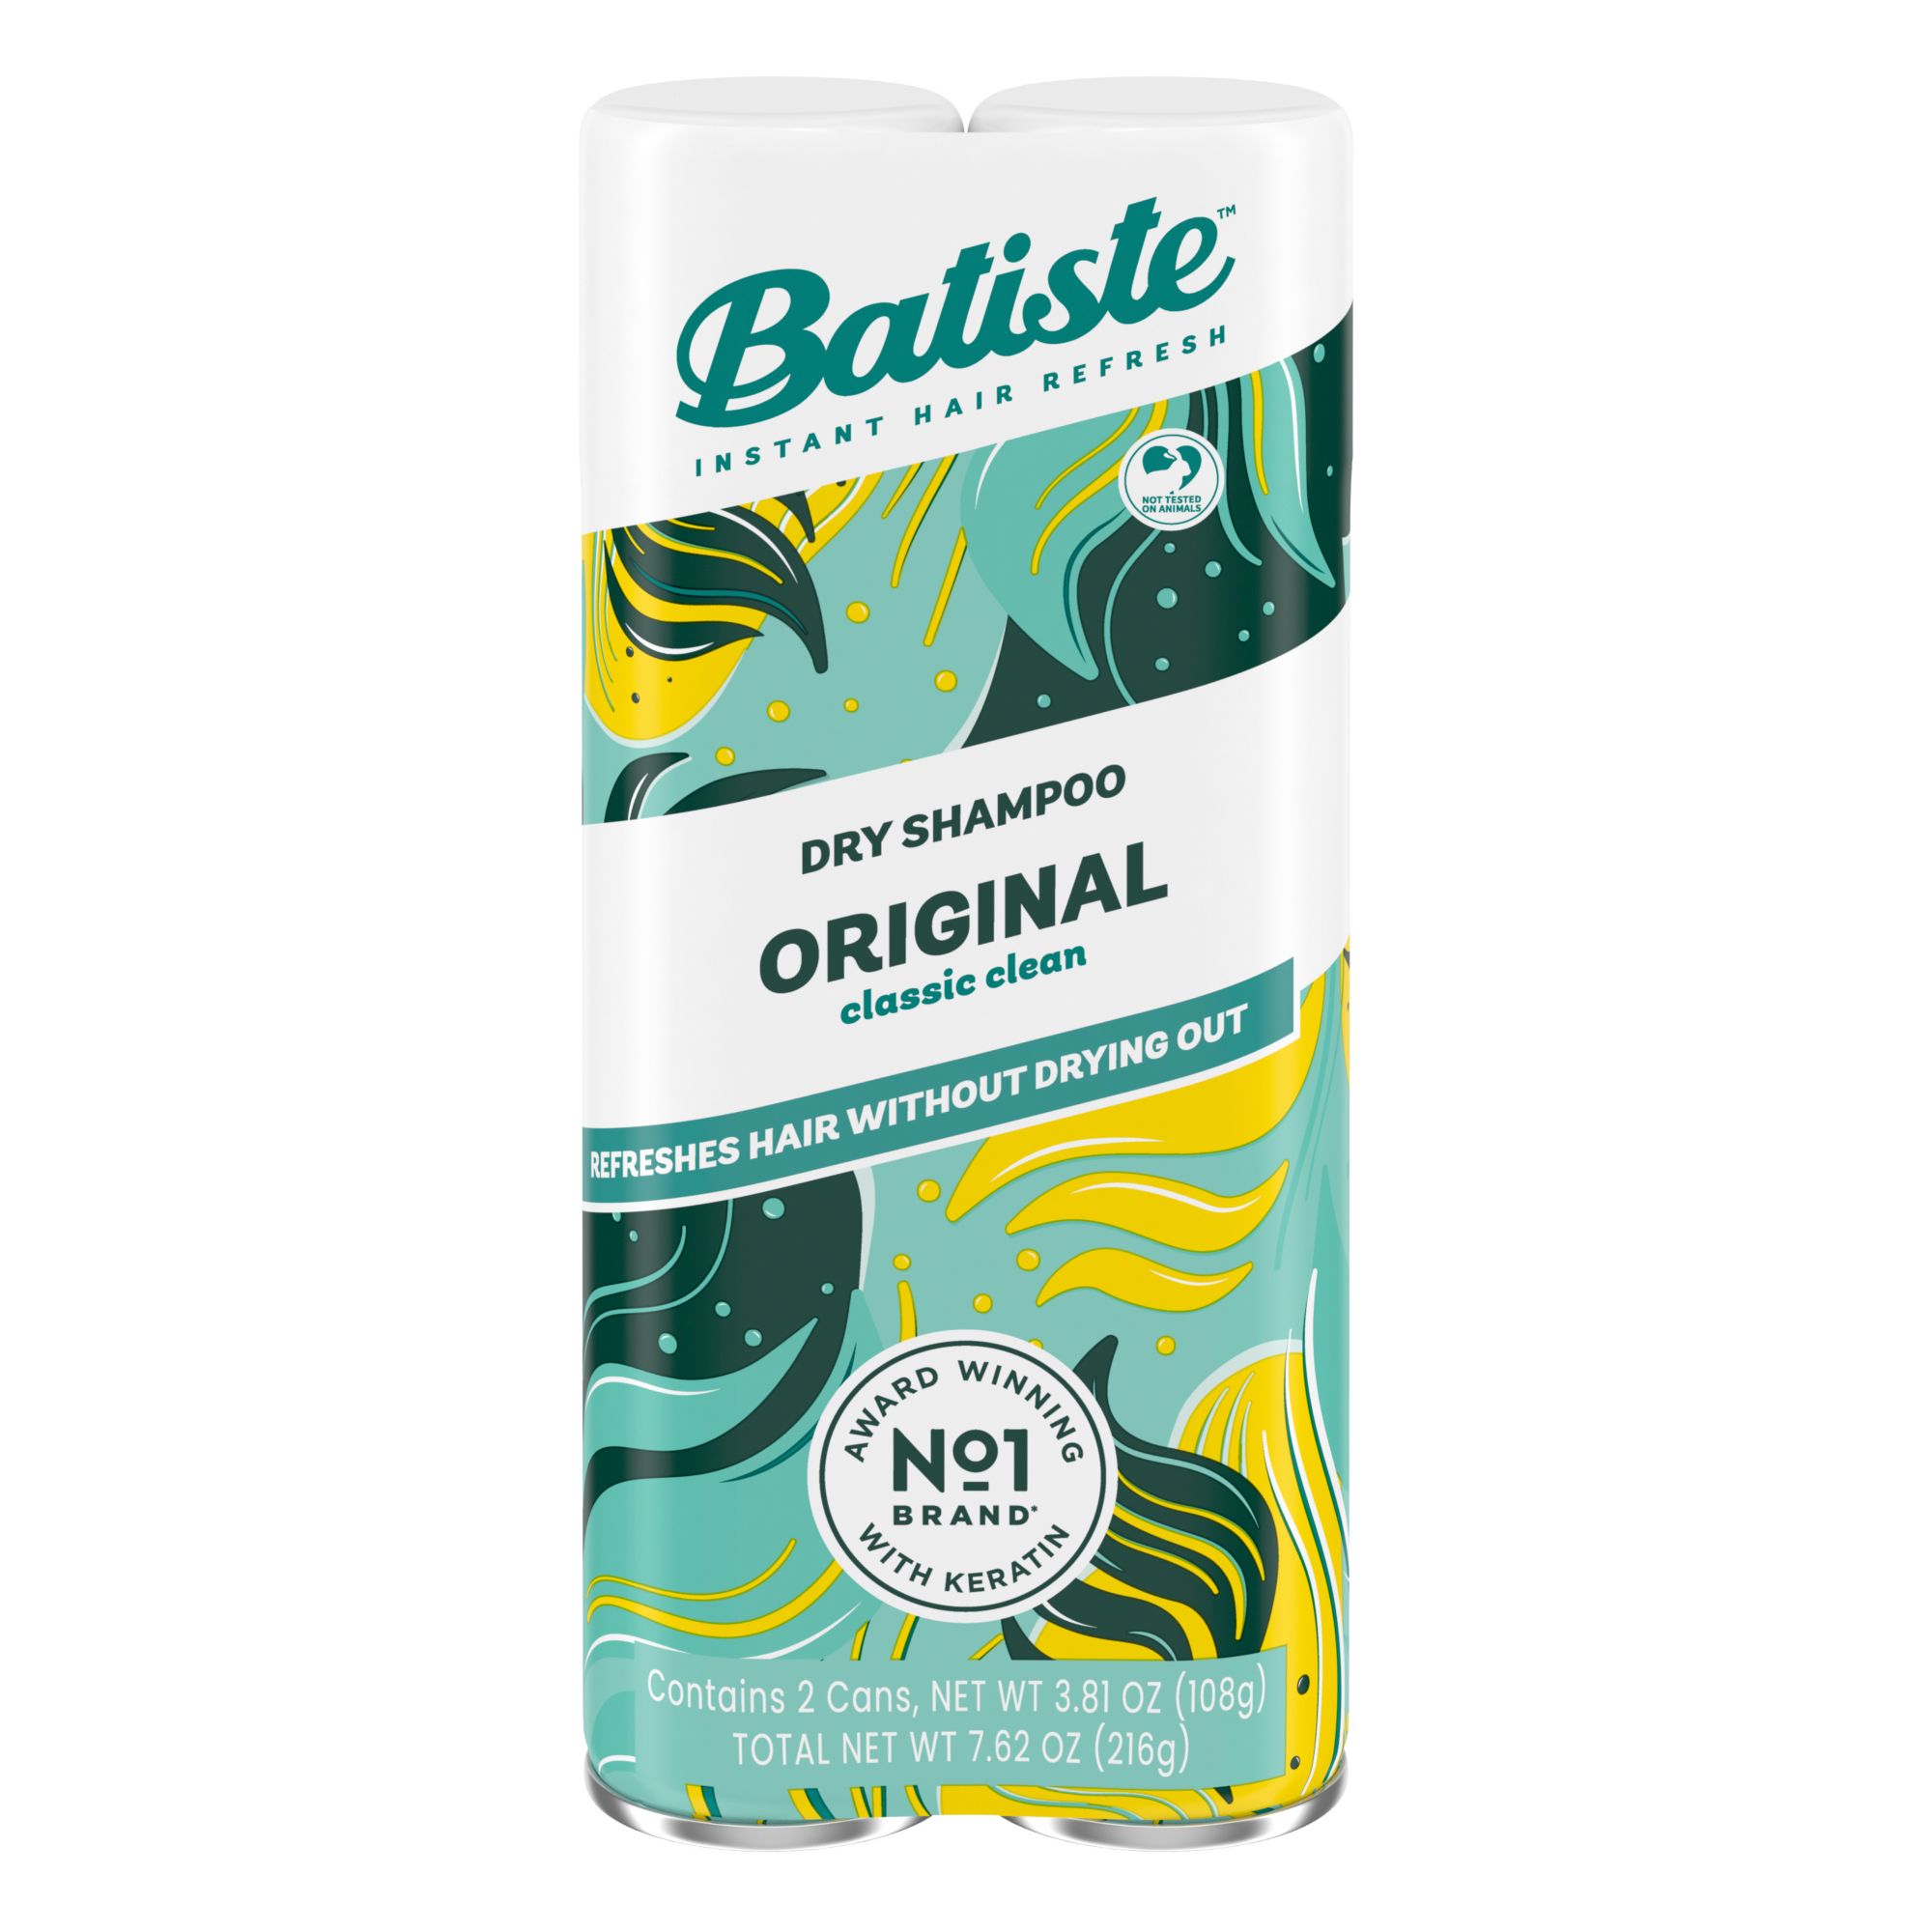 Batiste Original Dry Shampoo, 2 pk./3.81 oz.